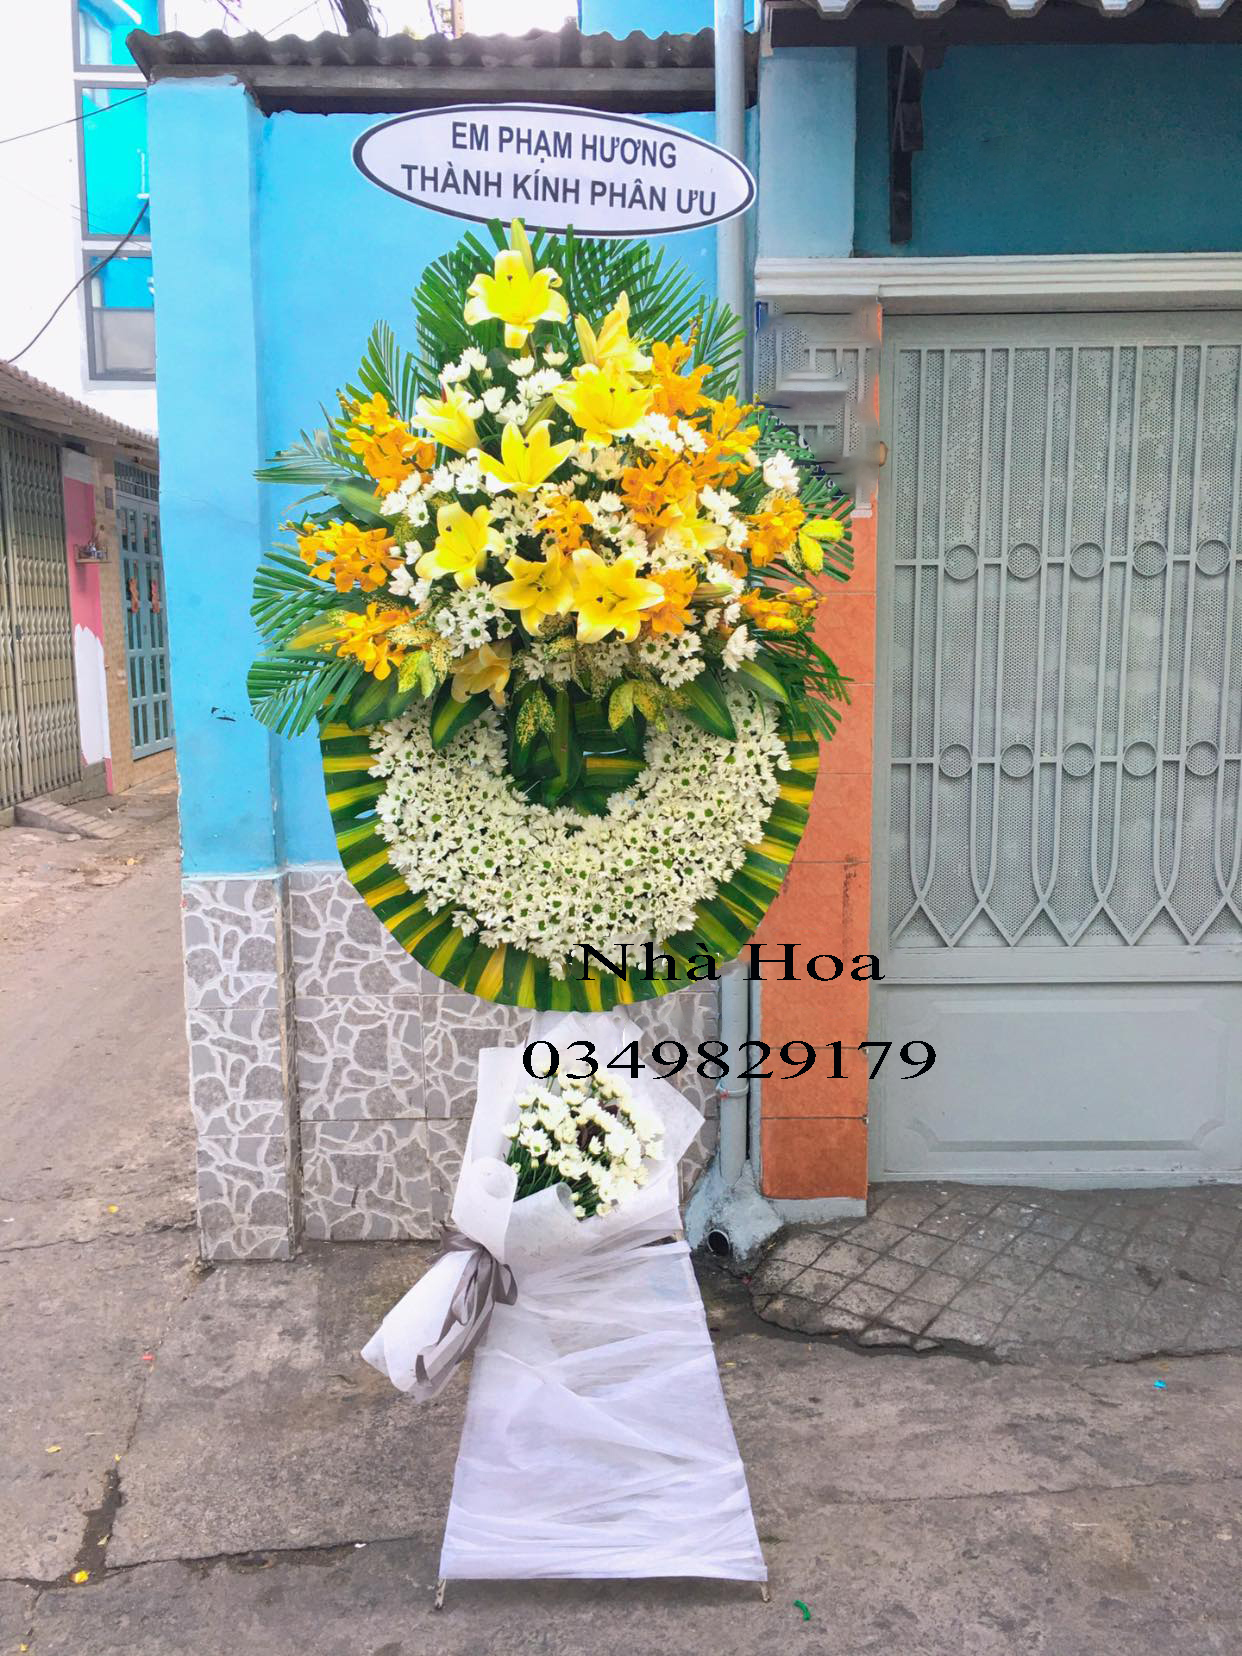 Shop hoa tươi quận Bình Tân giá rẻ đẹp và chất lượng tại Hồ Chí Minh